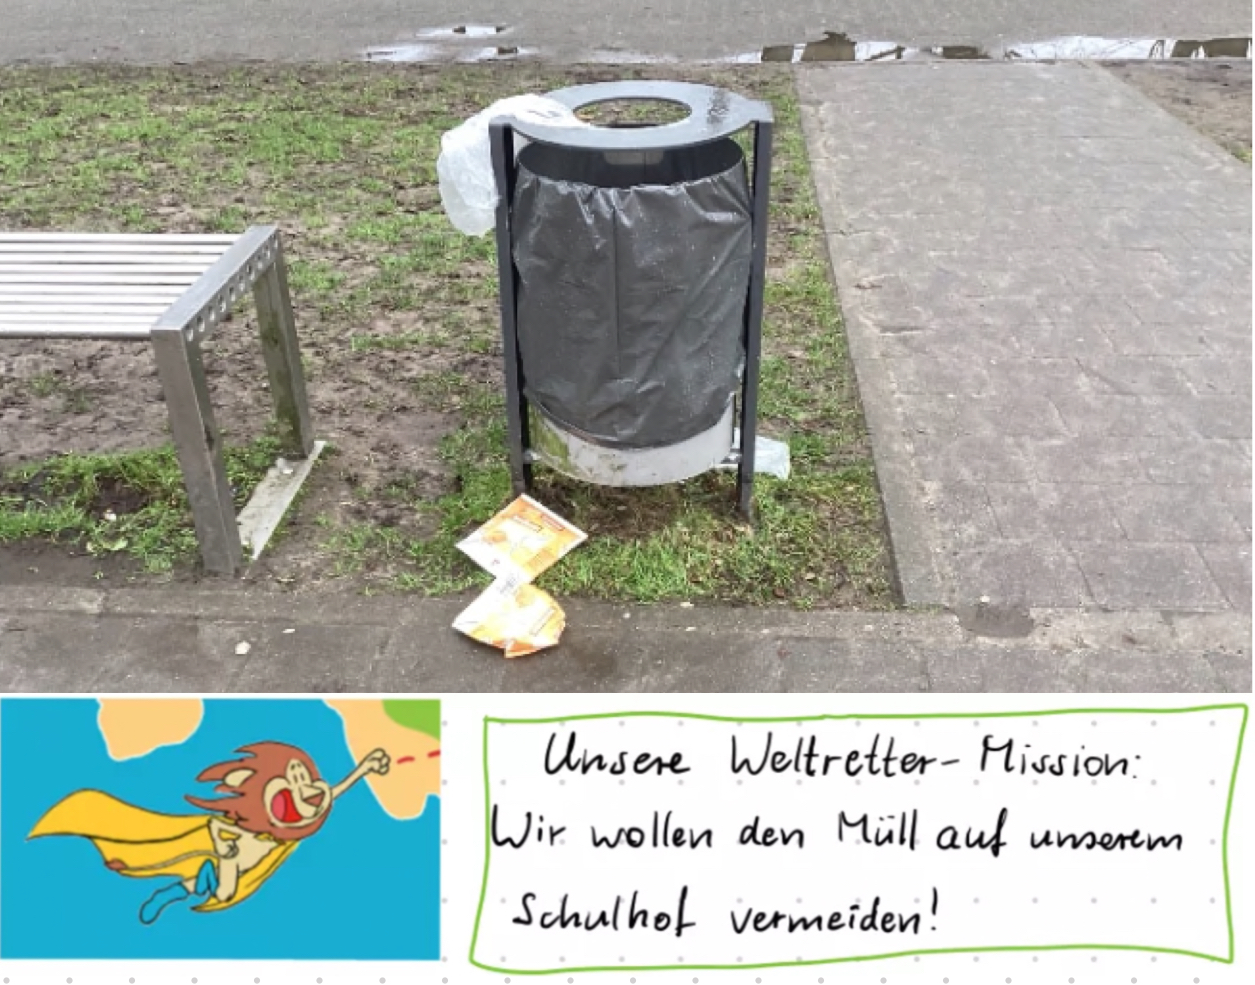 Collage: Oben: Foto eines Mülleimers auf dem Schulhof, vor dem zwei plattgetretene Getränkepackungen liegen. Unten links: Zeichnung des Weltretter Maskottchens, ein Löwe. Unten links: handschriftliche Notiz, Text: 